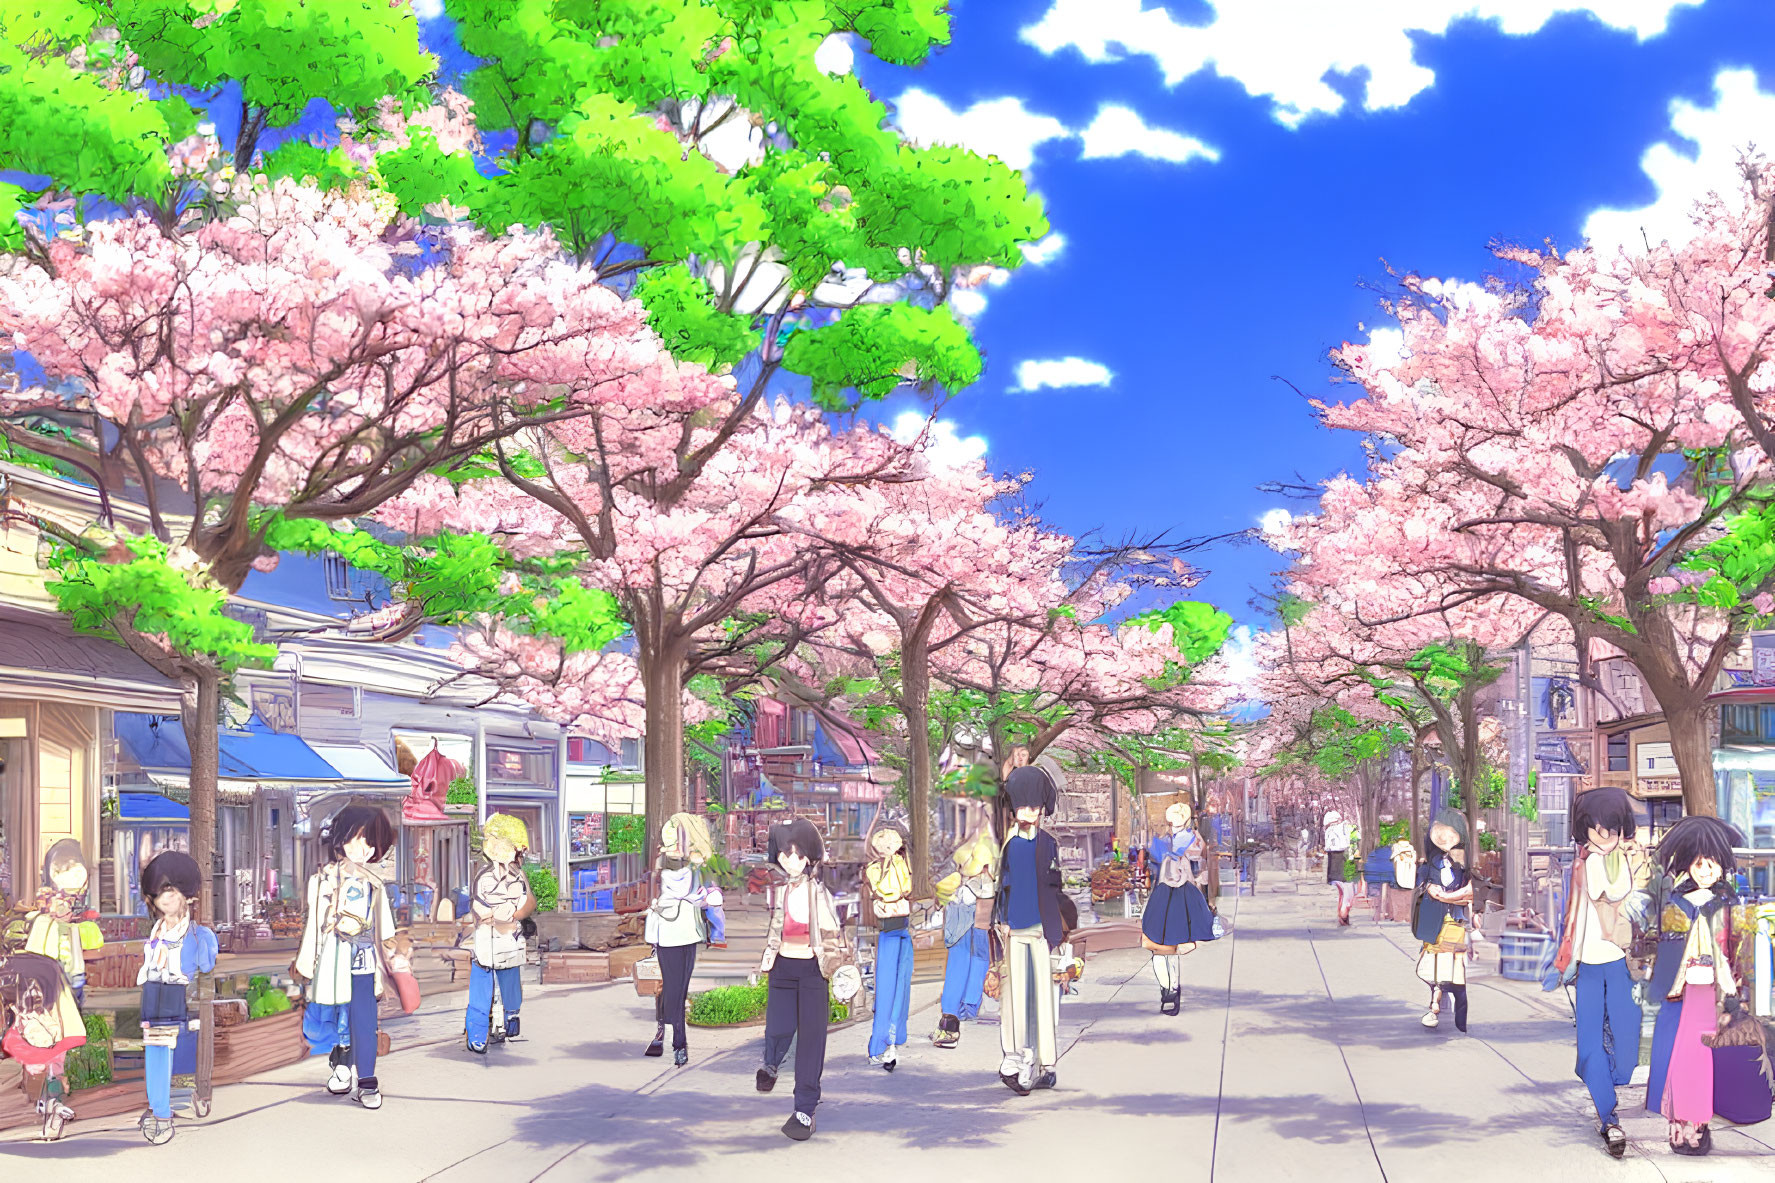 Bustling Street Scene Under Cherry Blossom Trees